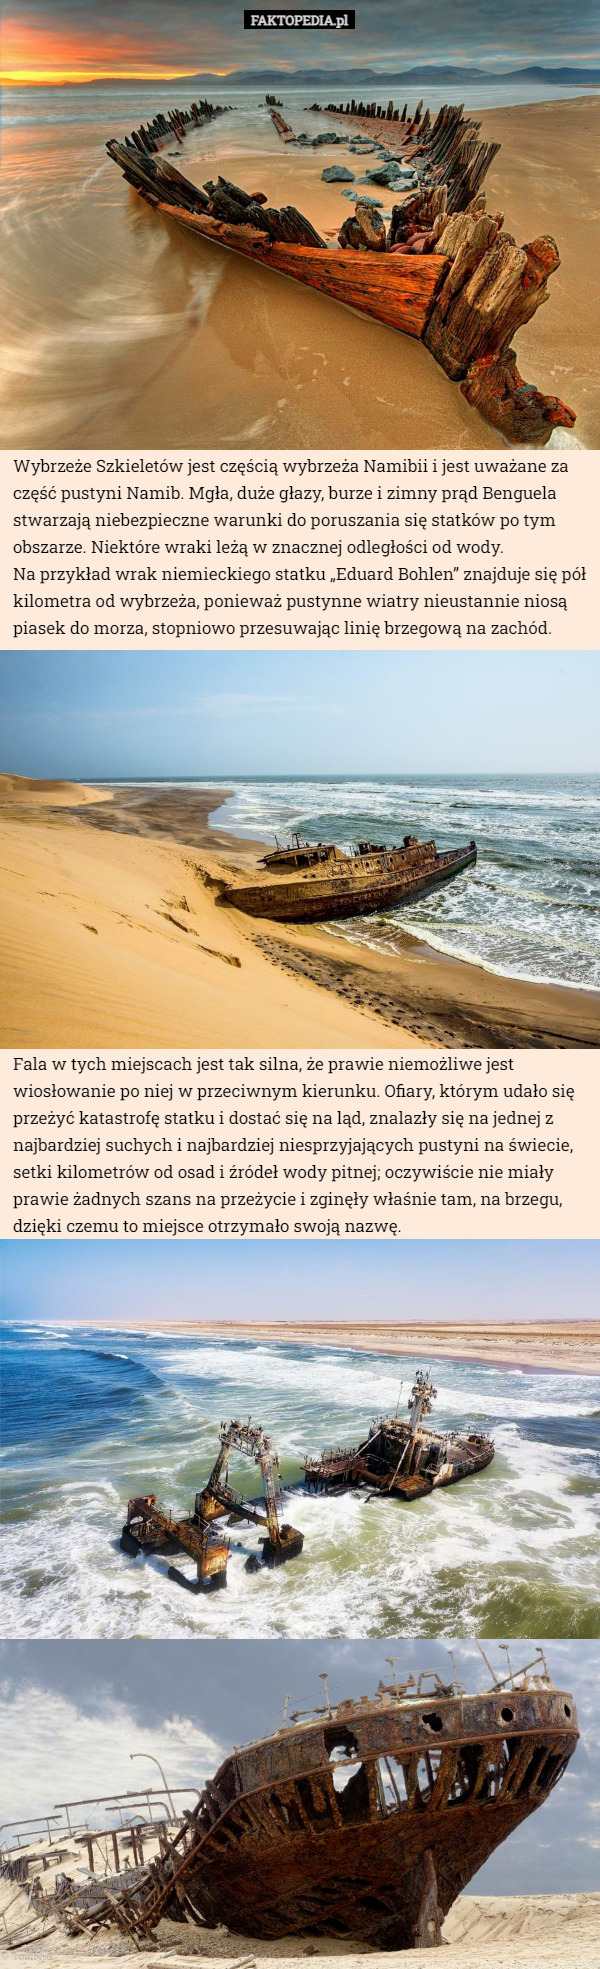 Wybrzeże Szkieletów jest częścią wybrzeża Namibii i jest uważane za część pustyni Namib. Mgła, duże głazy, burze i zimny prąd Benguela stwarzają niebezpieczne warunki do poruszania się statków po tym obszarze. Niektóre wraki leżą w znacznej odległości od wody.
 Na przykład wrak niemieckiego statku „Eduard Bohlen” znajduje się pół kilometra od wybrzeża, ponieważ pustynne wiatry nieustannie niosą piasek do morza, stopniowo przesuwając linię brzegową na zachód. Fala w tych miejscach jest tak silna, że prawie niemożliwe jest wiosłowanie po niej w przeciwnym kierunku. Ofiary, którym udało się przeżyć katastrofę statku i dostać się na ląd, znalazły się na jednej z najbardziej suchych i najbardziej niesprzyjających pustyni na świecie, setki kilometrów od osad i źródeł wody pitnej; oczywiście nie miały prawie żadnych szans na przeżycie i zginęły właśnie tam, na brzegu, dzięki czemu to miejsce otrzymało swoją nazwę. 